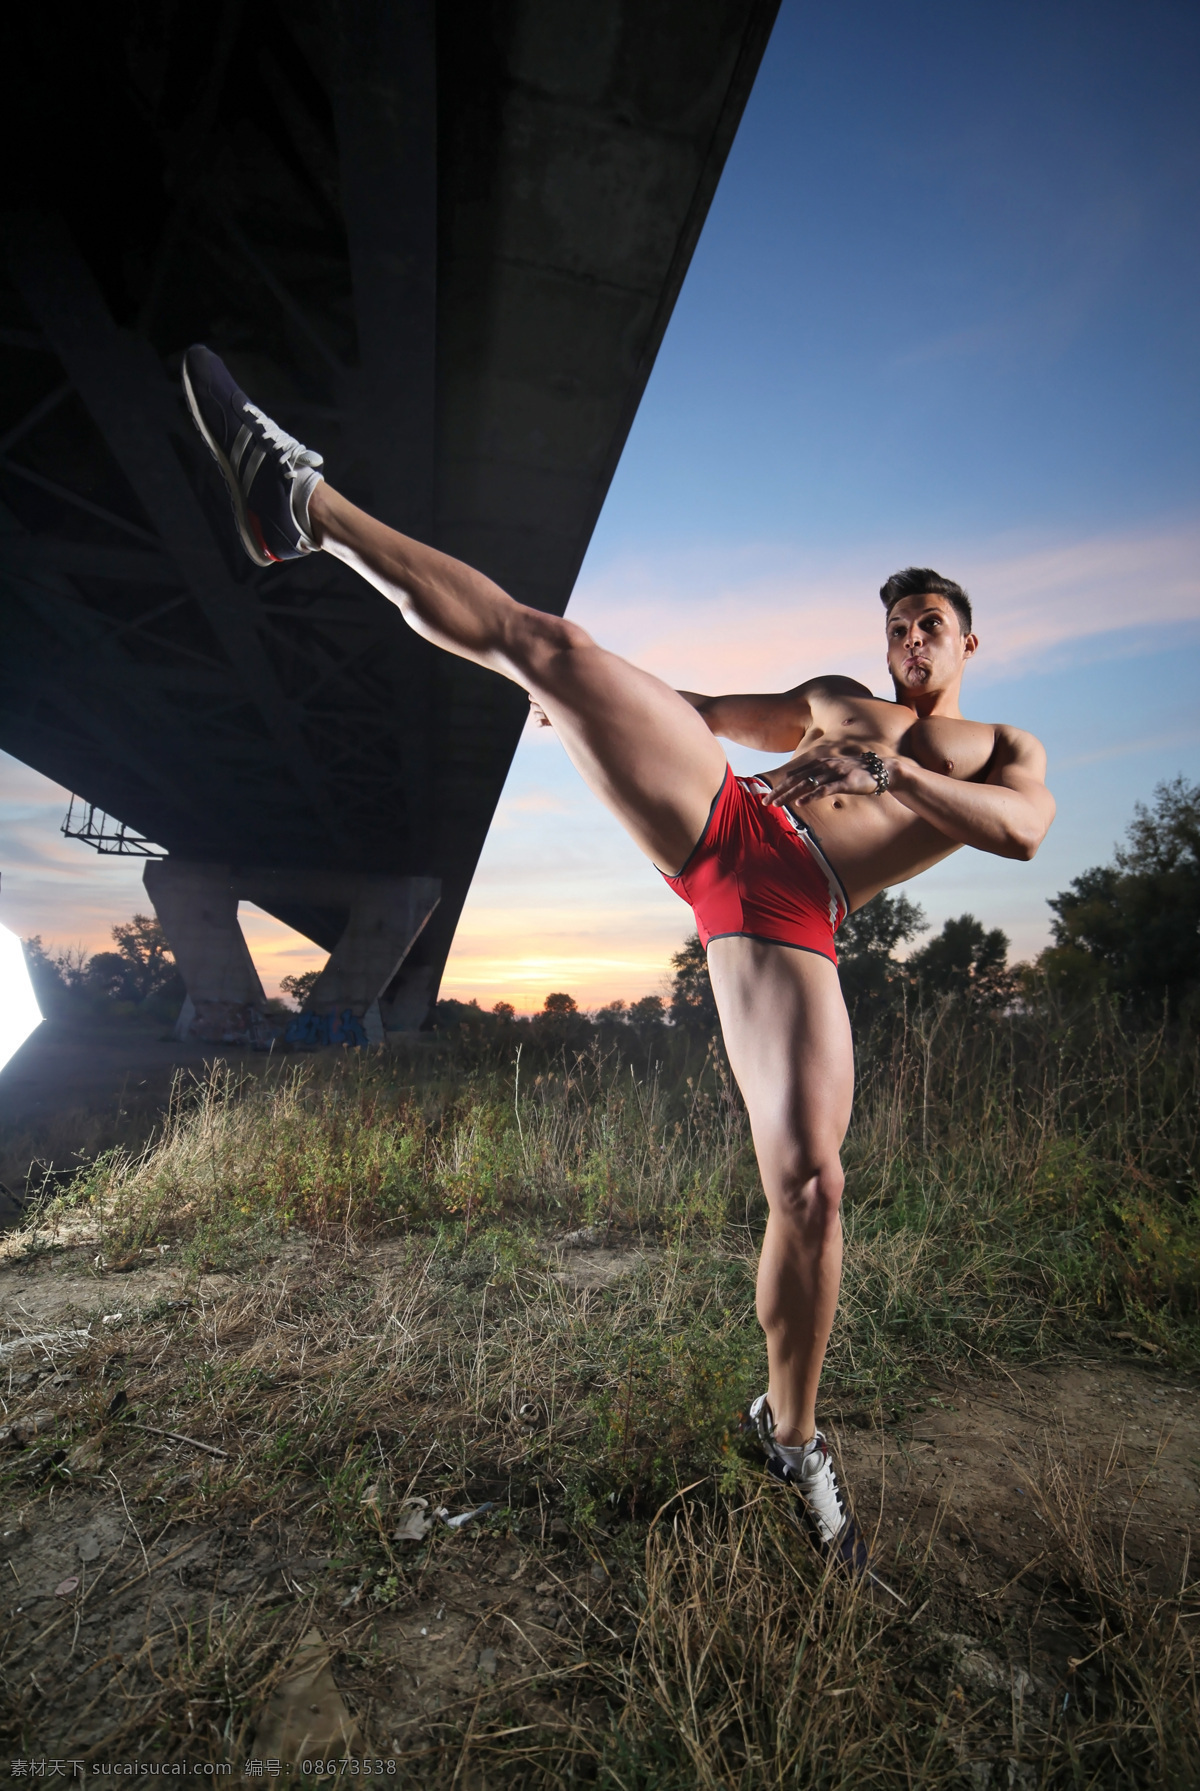 踢腿 肌肉 男 男人 外国男人 键身 运动 生活人物 人物图片